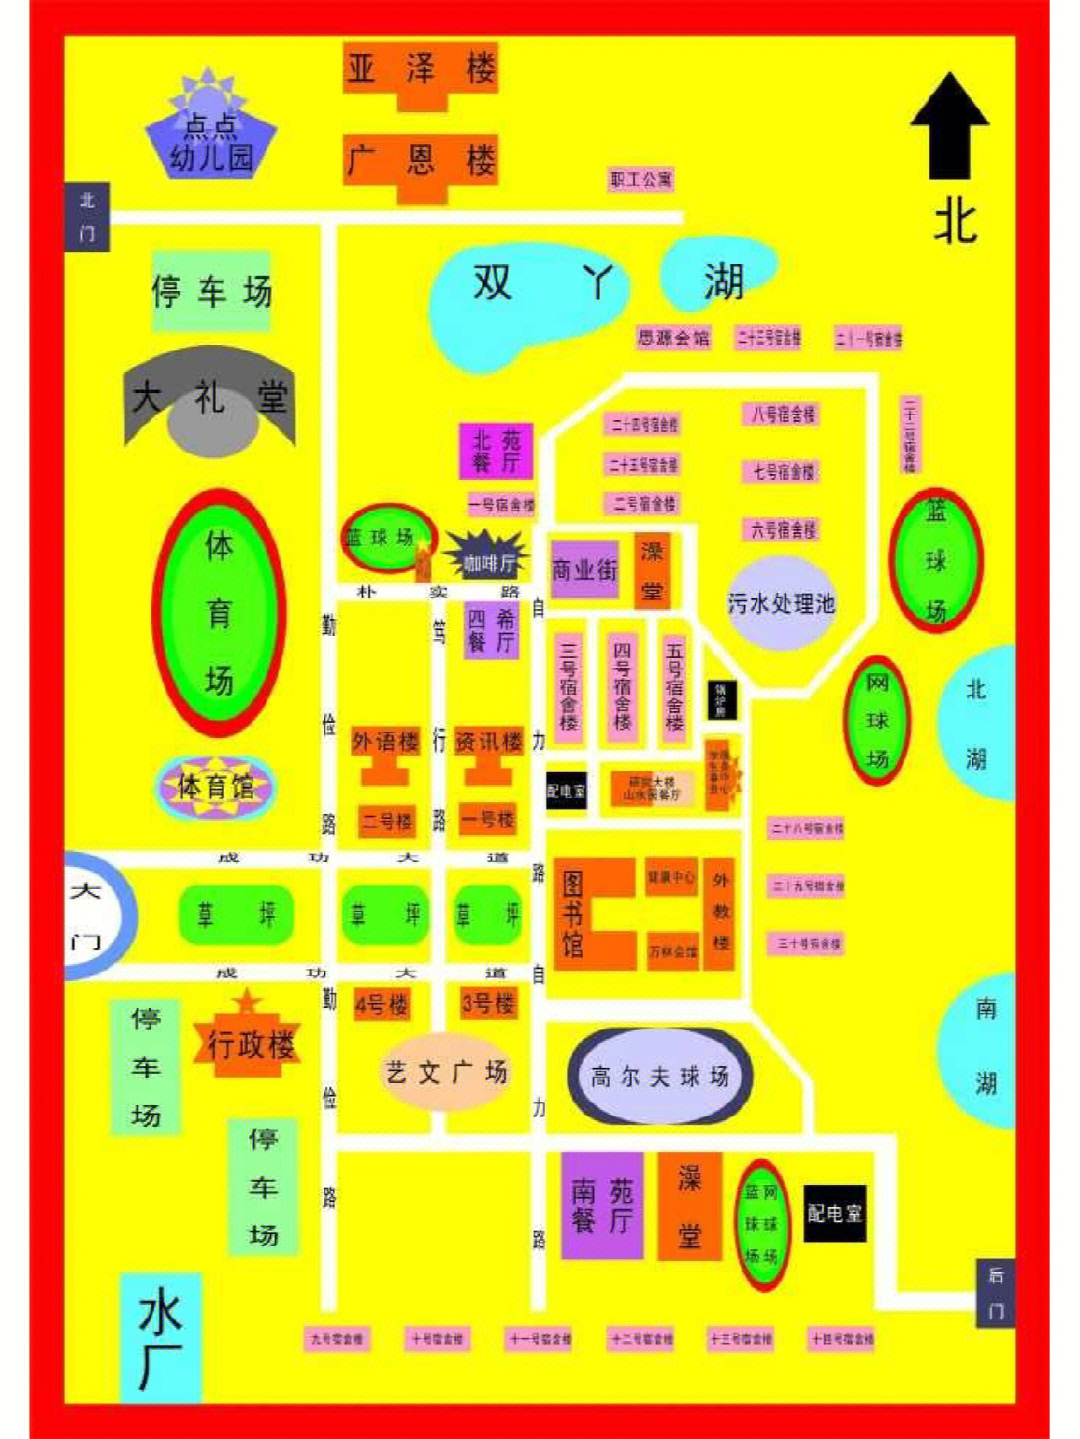 郑州工商学院校园地图图片